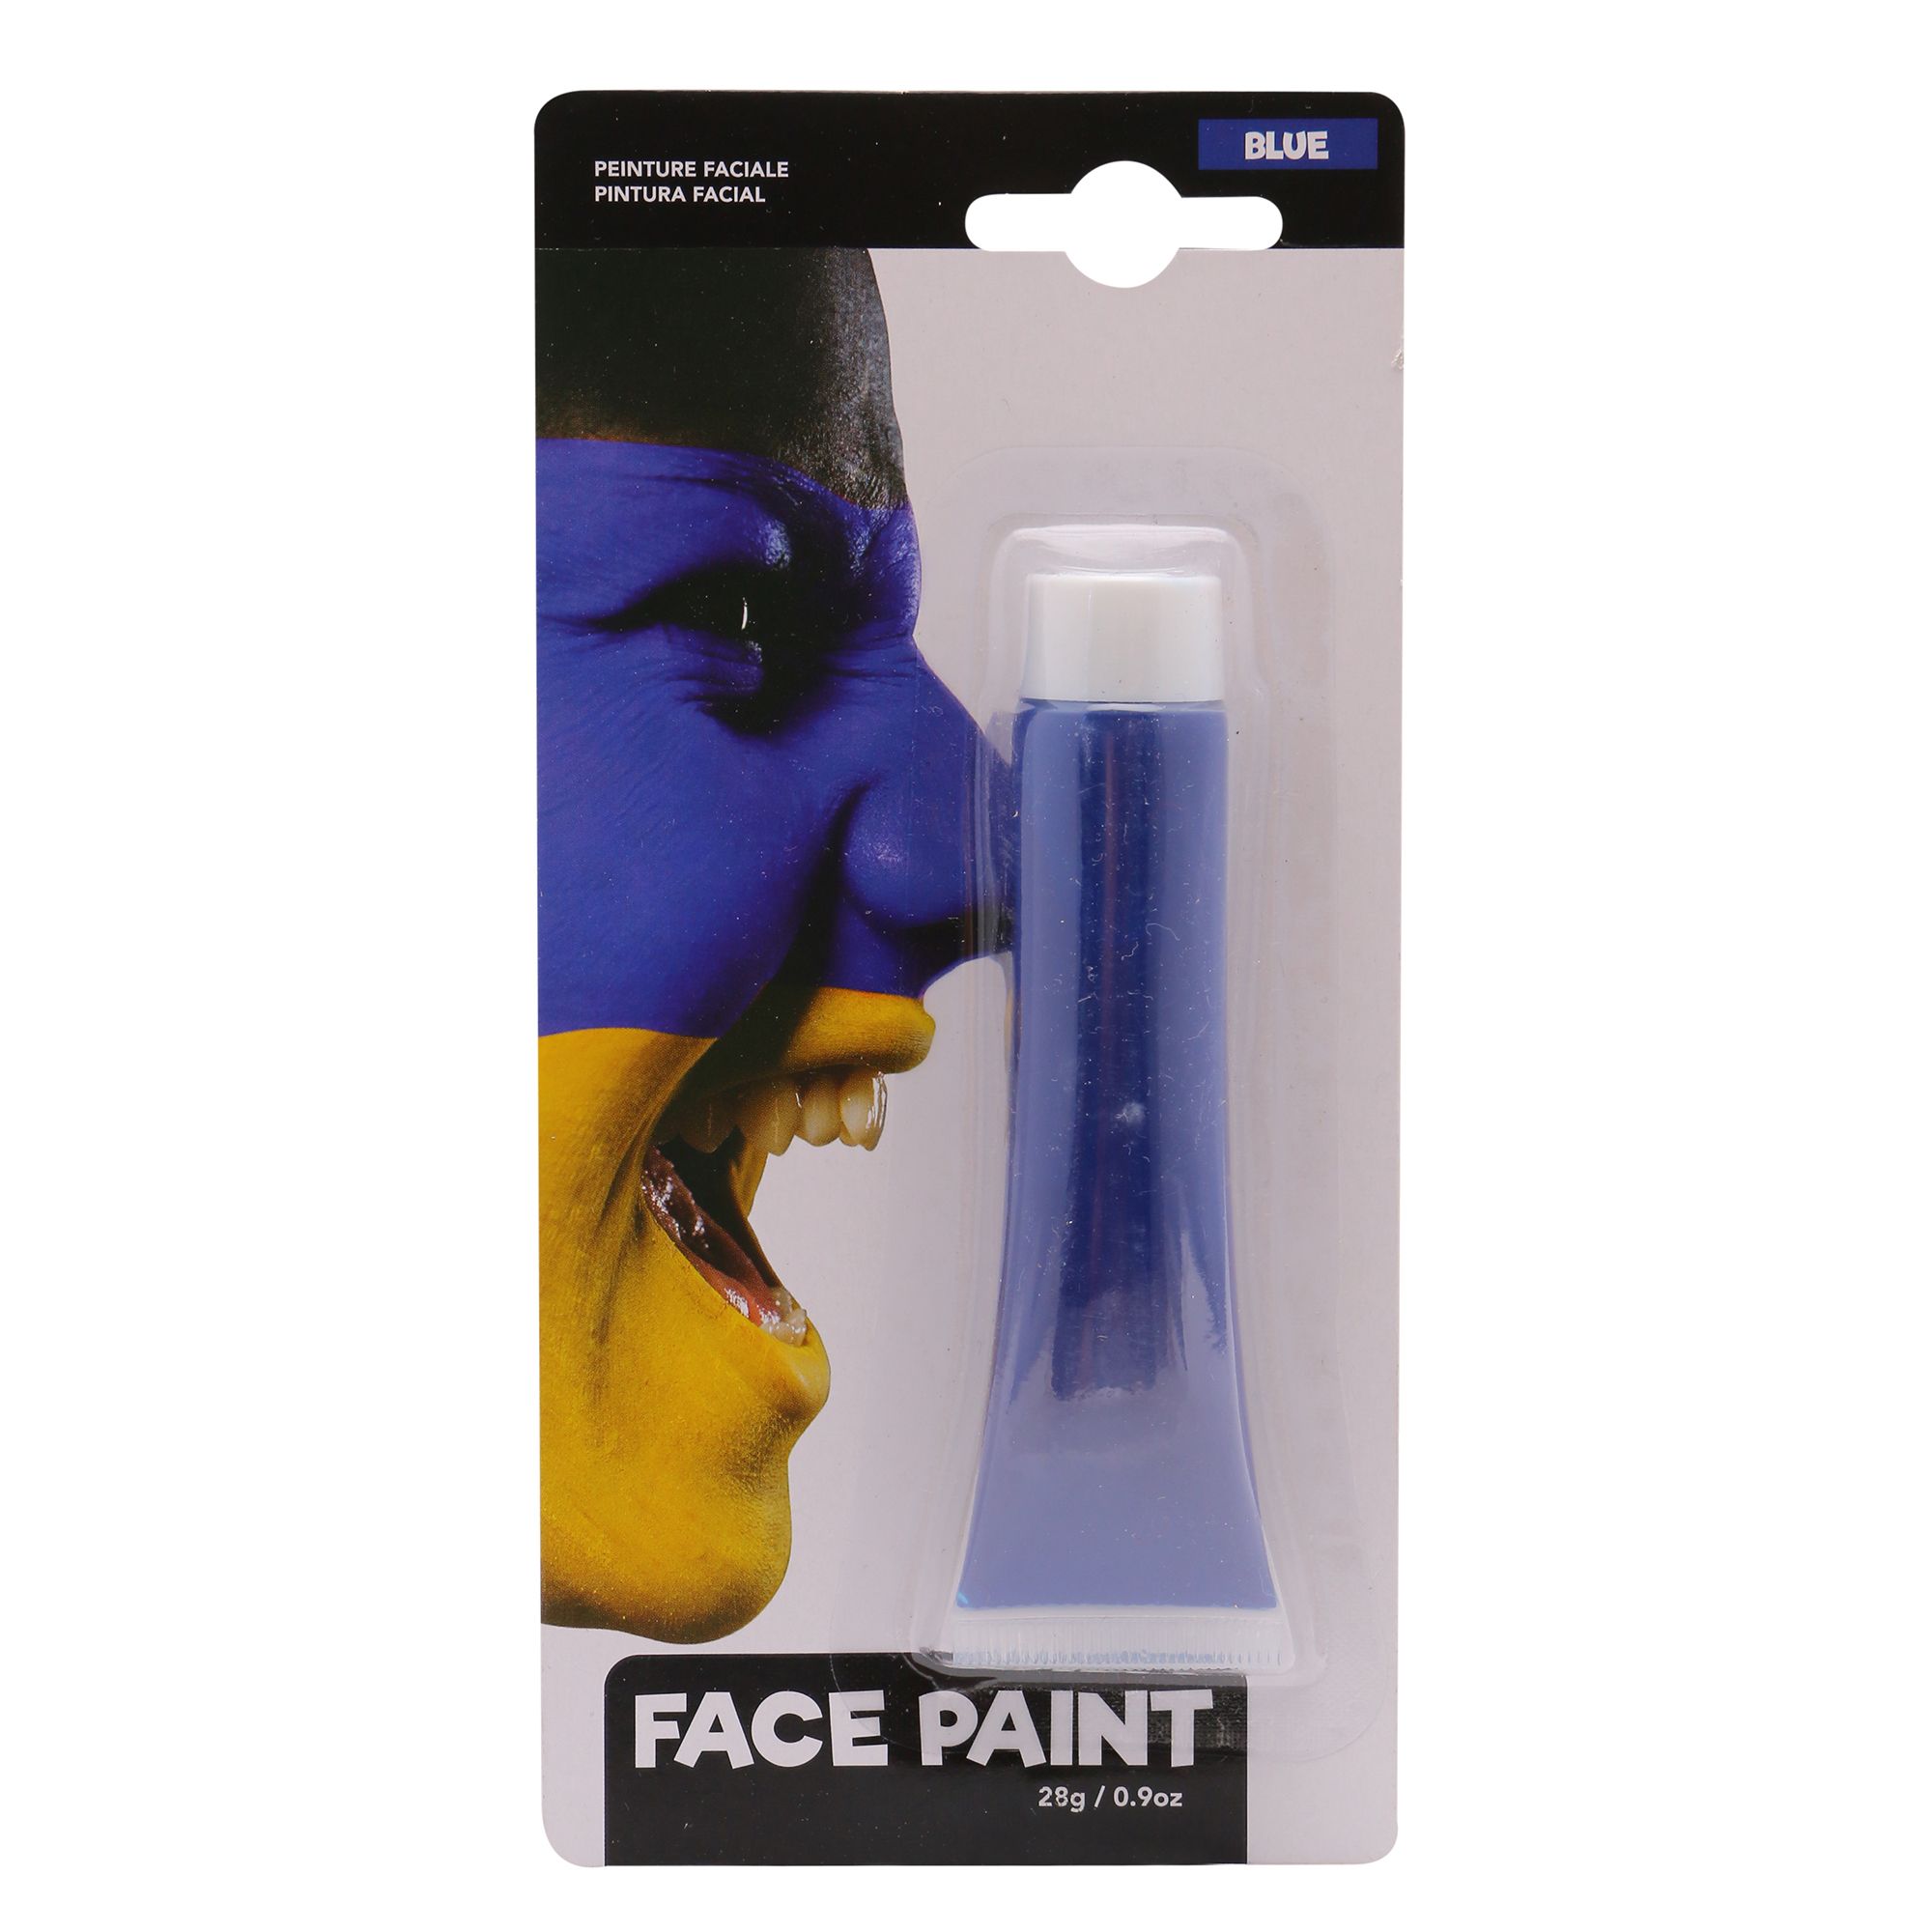 Face Paint Blue 28G